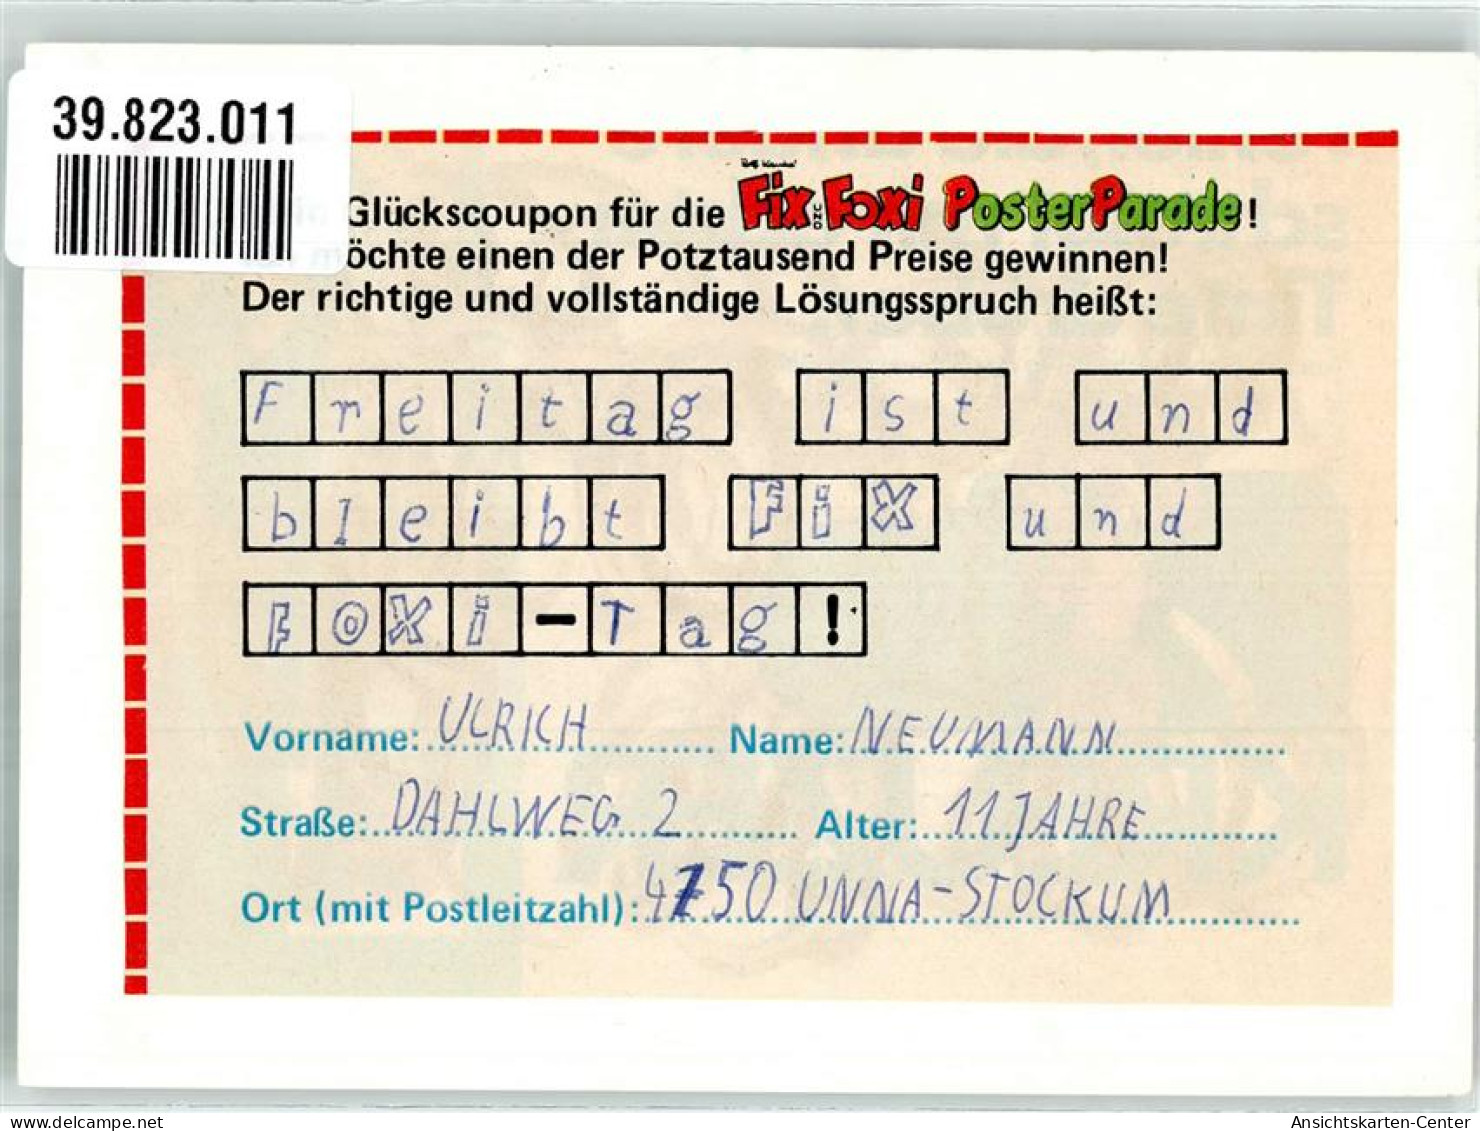 39823011 - Rheda-Wiedenbrueck - Rheda-Wiedenbrueck